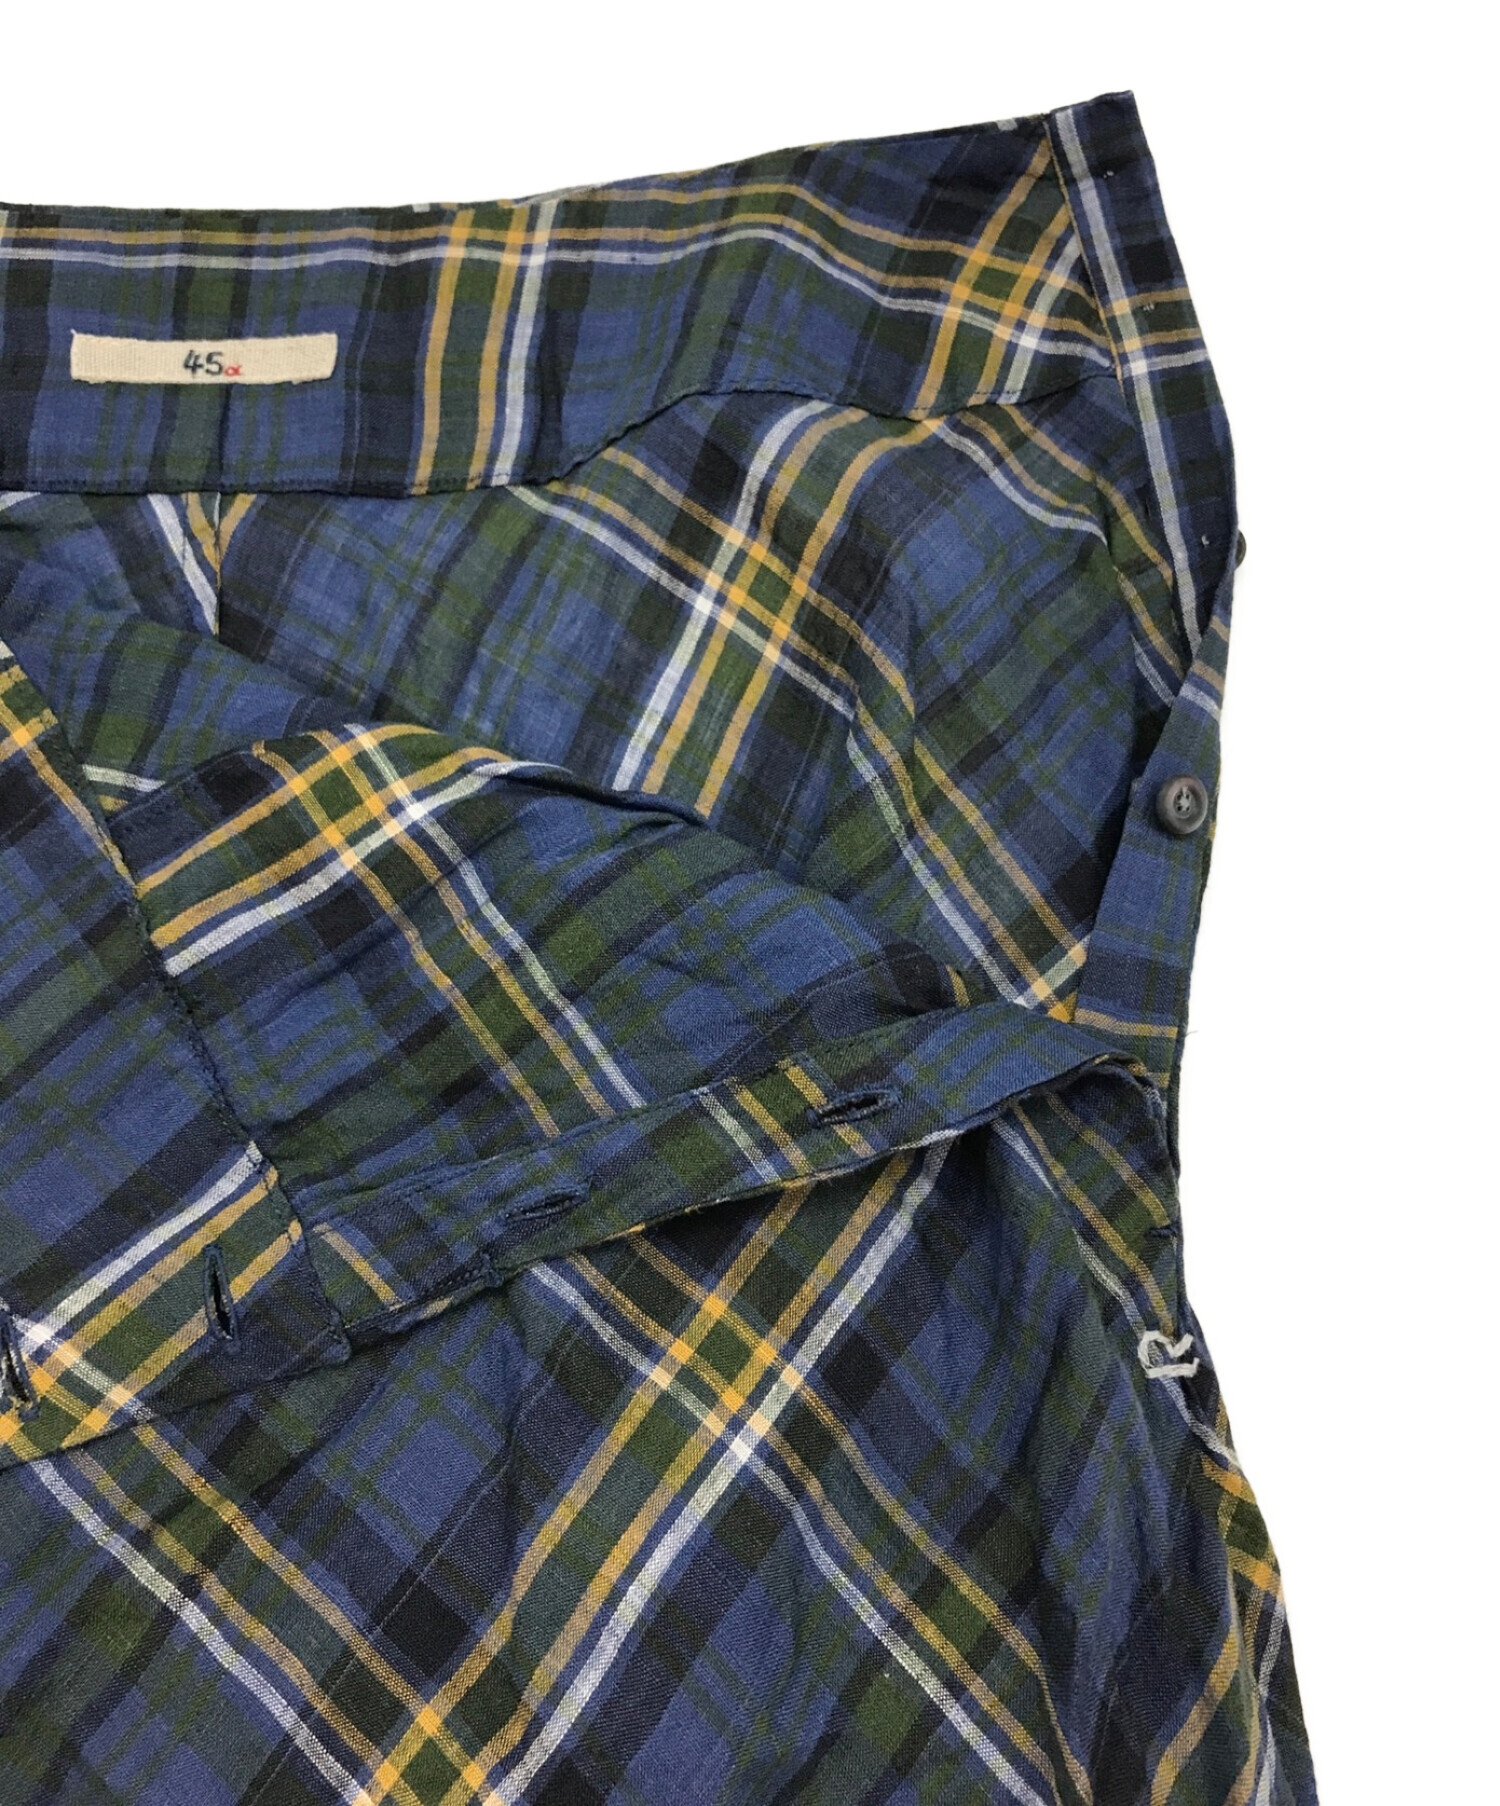 45R (フォーティーファイブアール) マドラスチェック柄スカート ネイビー×グリーン サイズ:2